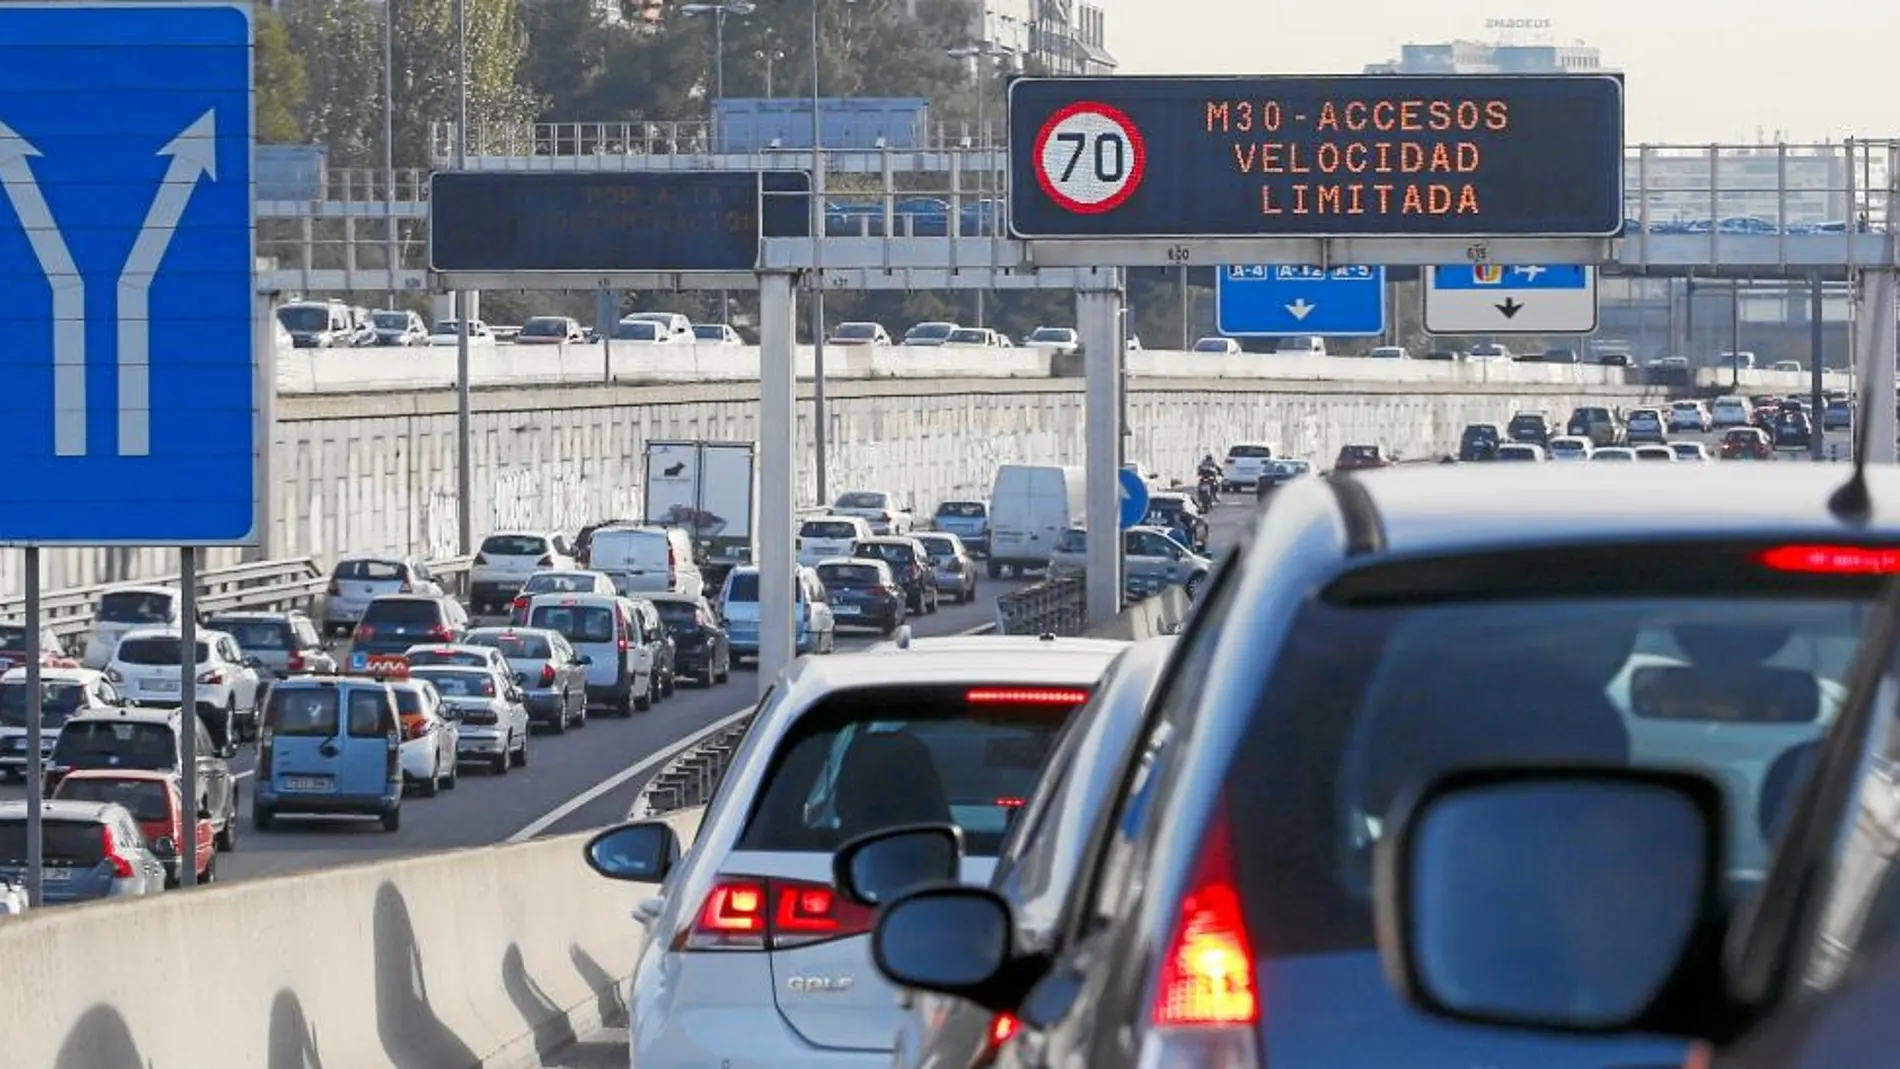 El Ayuntamiento de Madrid activa el protocolo por alta contaminación con restricciones al tráfico en Madrid